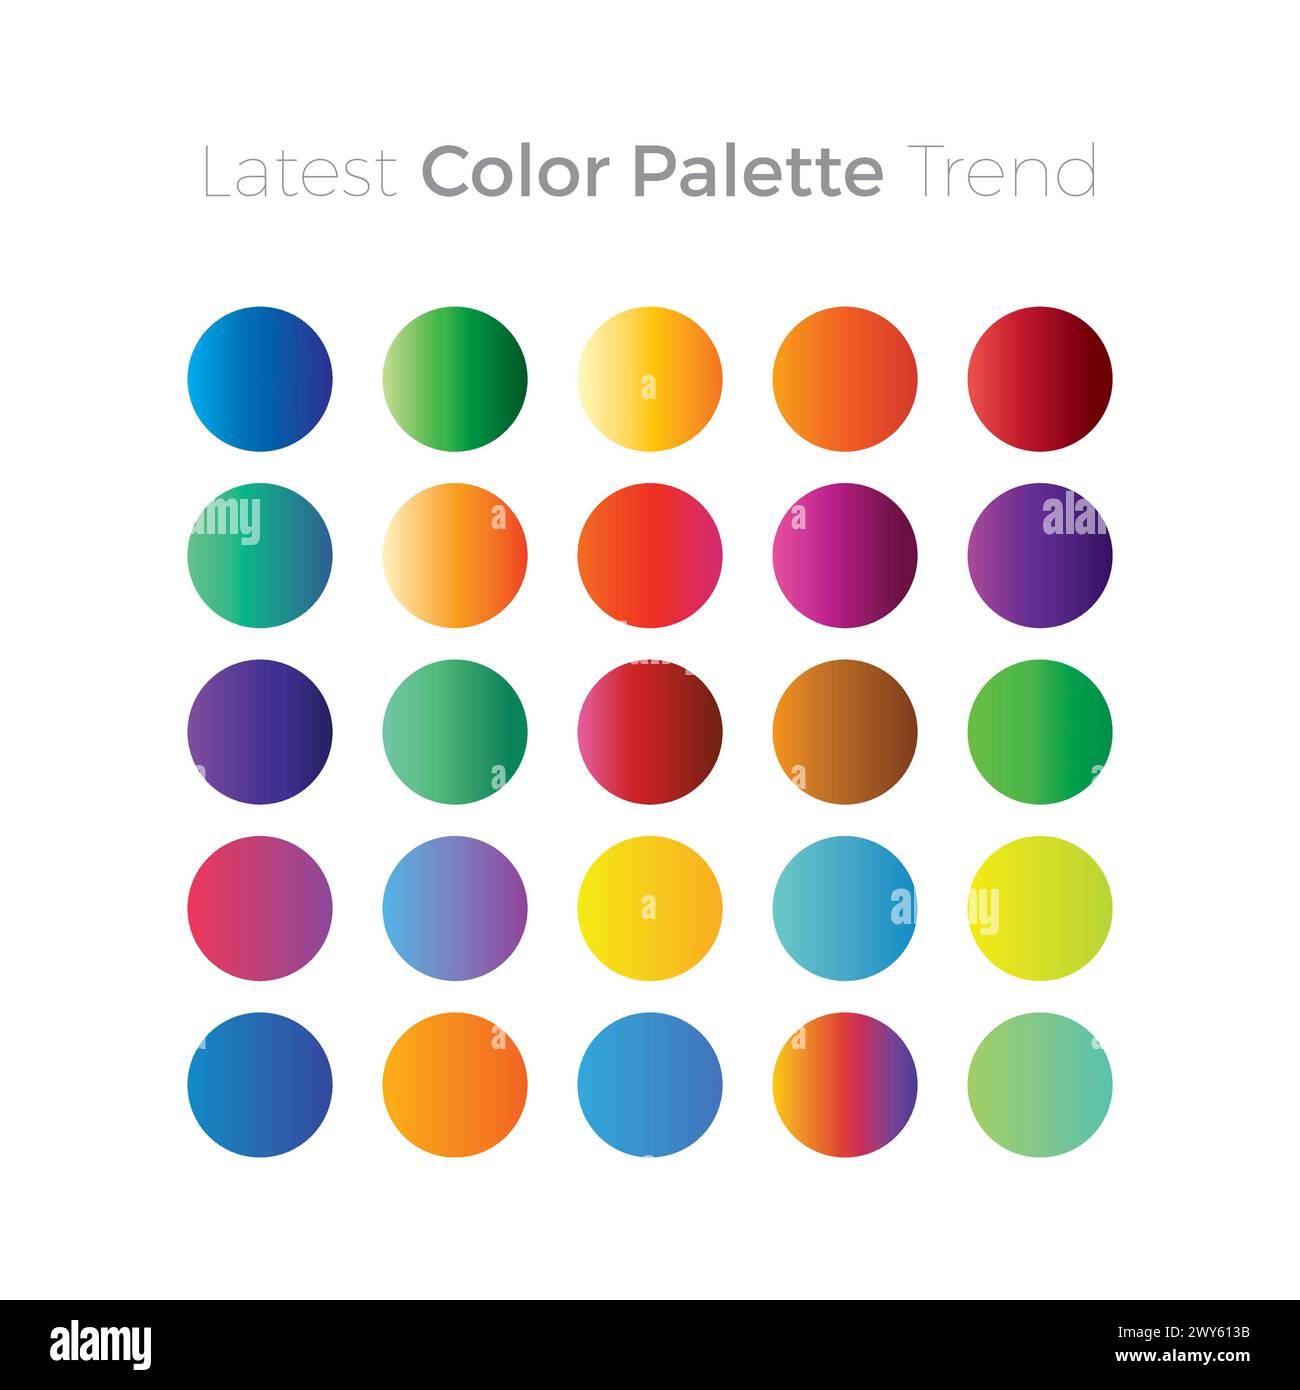 Dernière tendance de palette de couleurs. Vecteur couleur palette Illustration de Vecteur